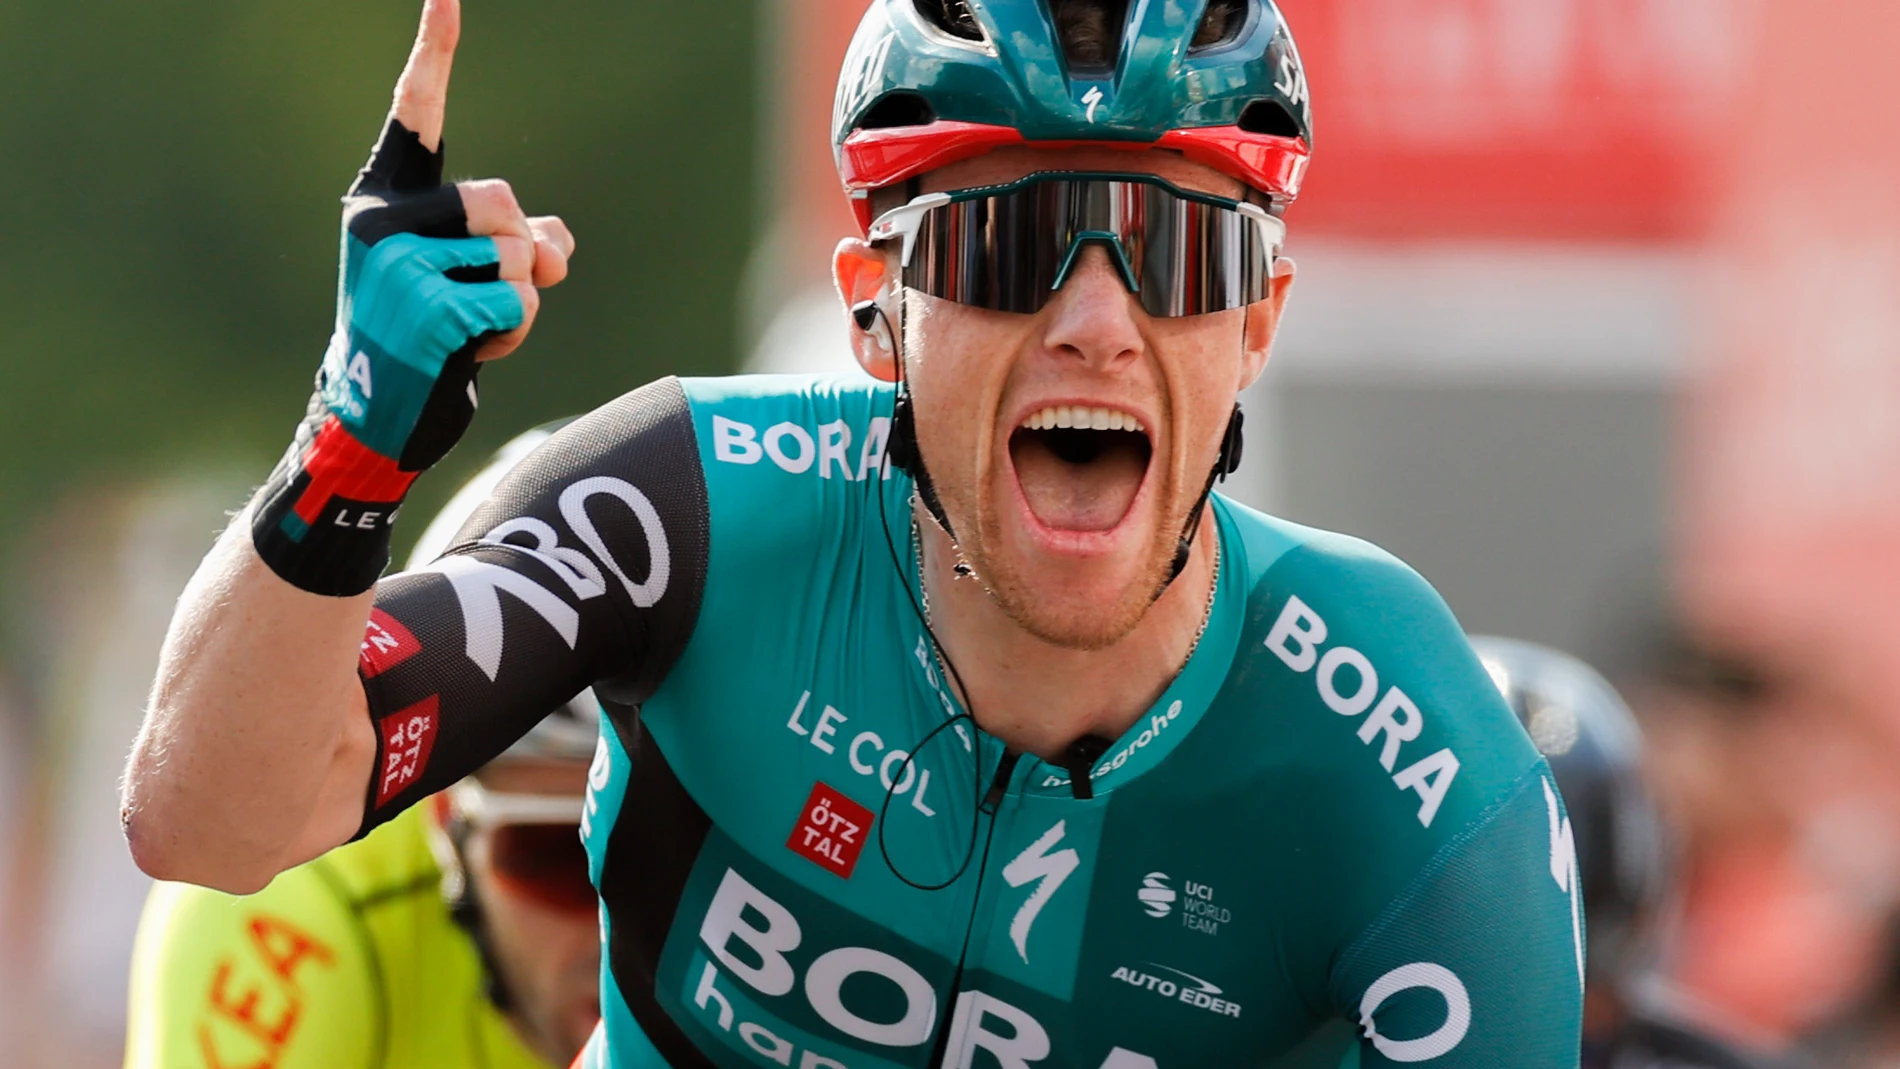 Sam Bennett celebra su victoria en la 2ª etapa de la Vuelta a España.